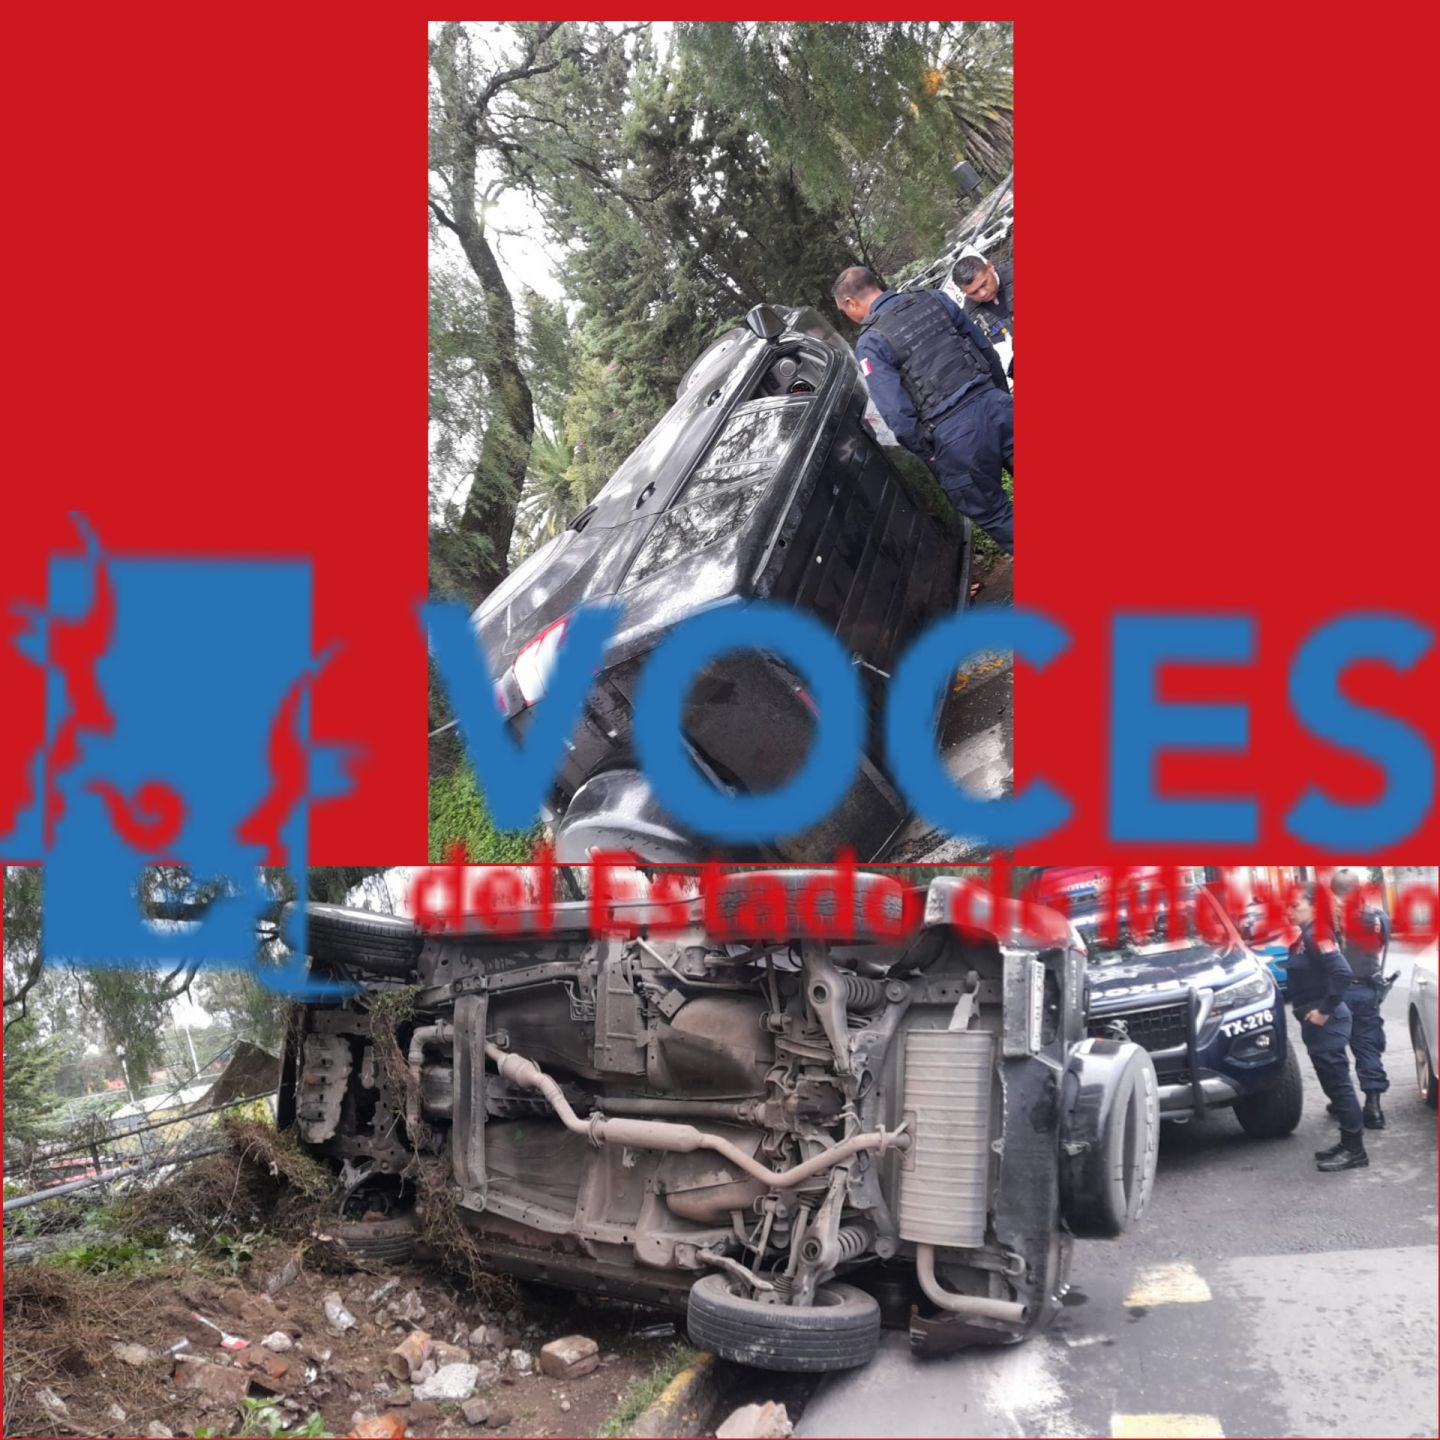 Se volcó camioneta en San Mateo Huexotla Texcoco, iba el conductor en estado de ebriedad. 